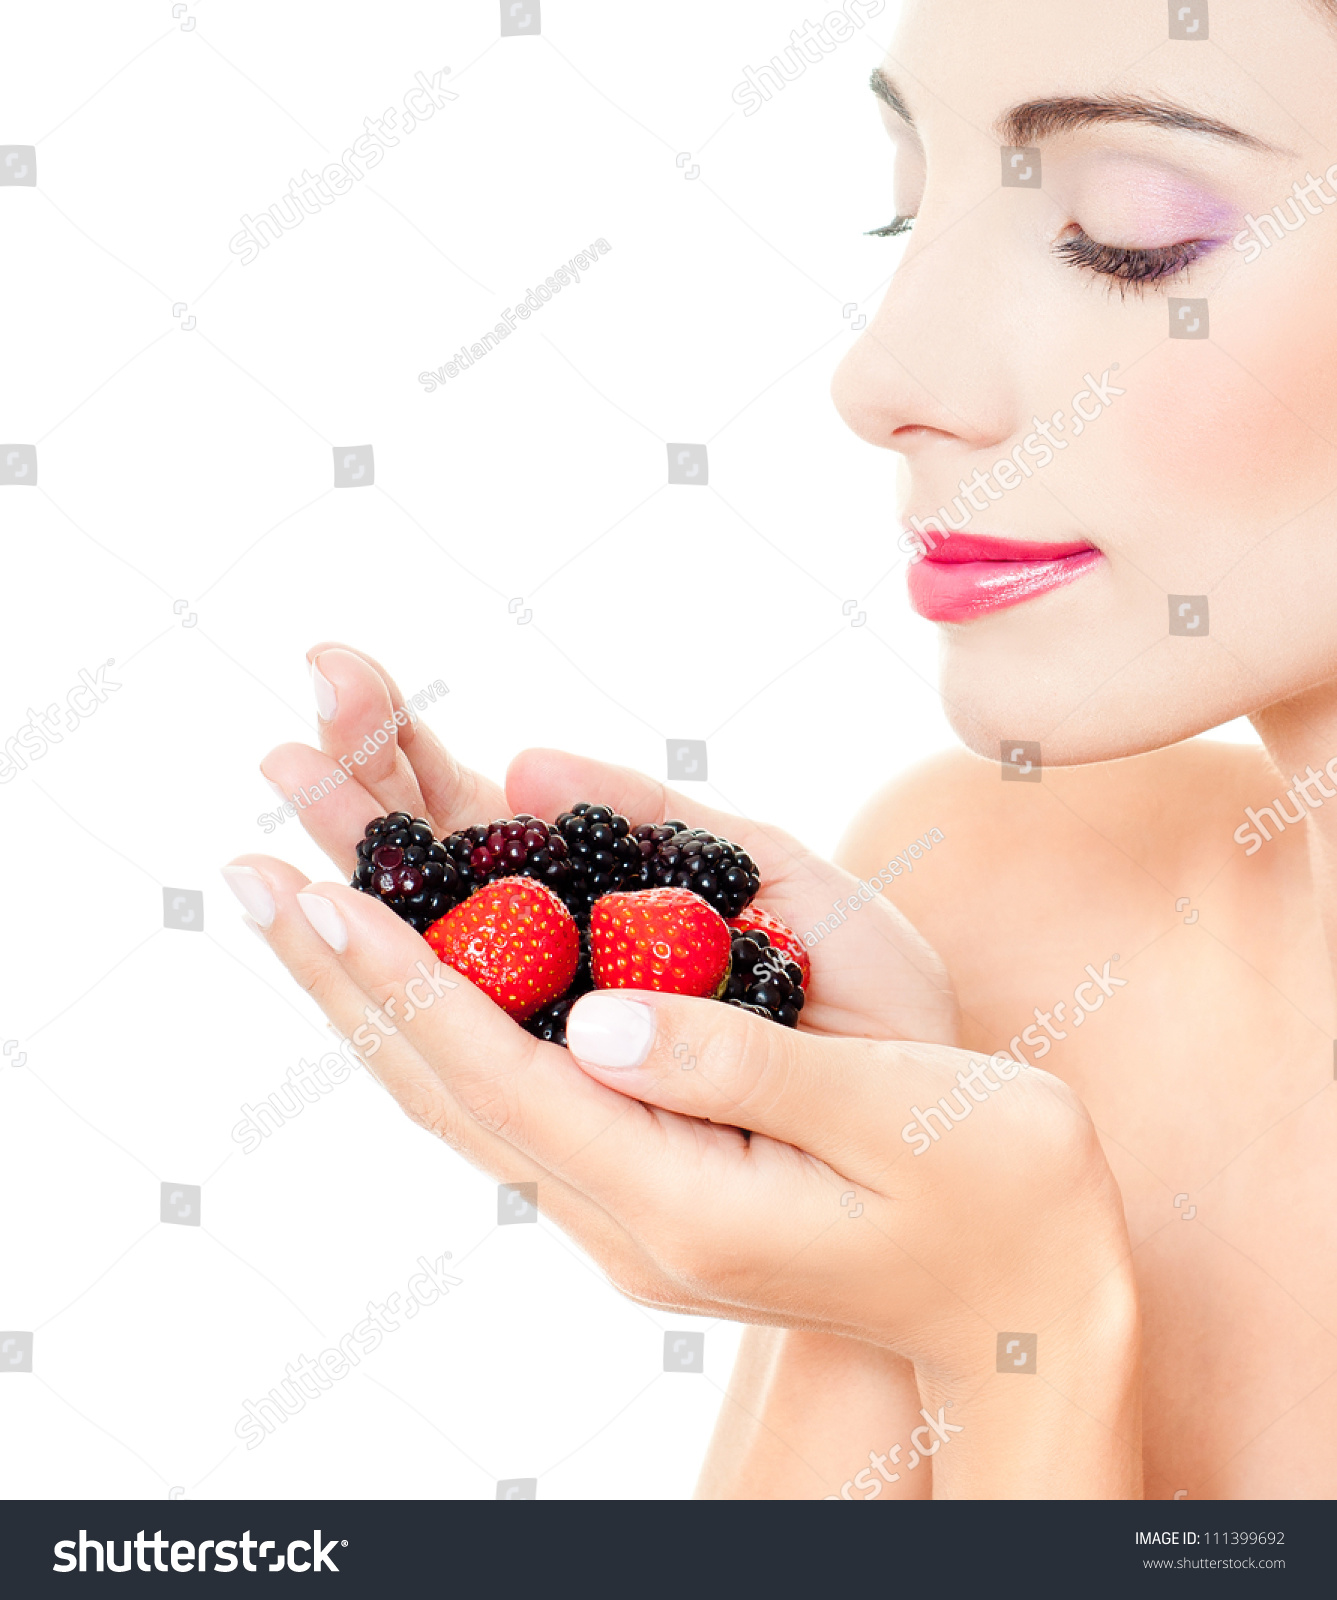 Beautiful Girl Berries Stock Photo 111399692 - Shutterstock